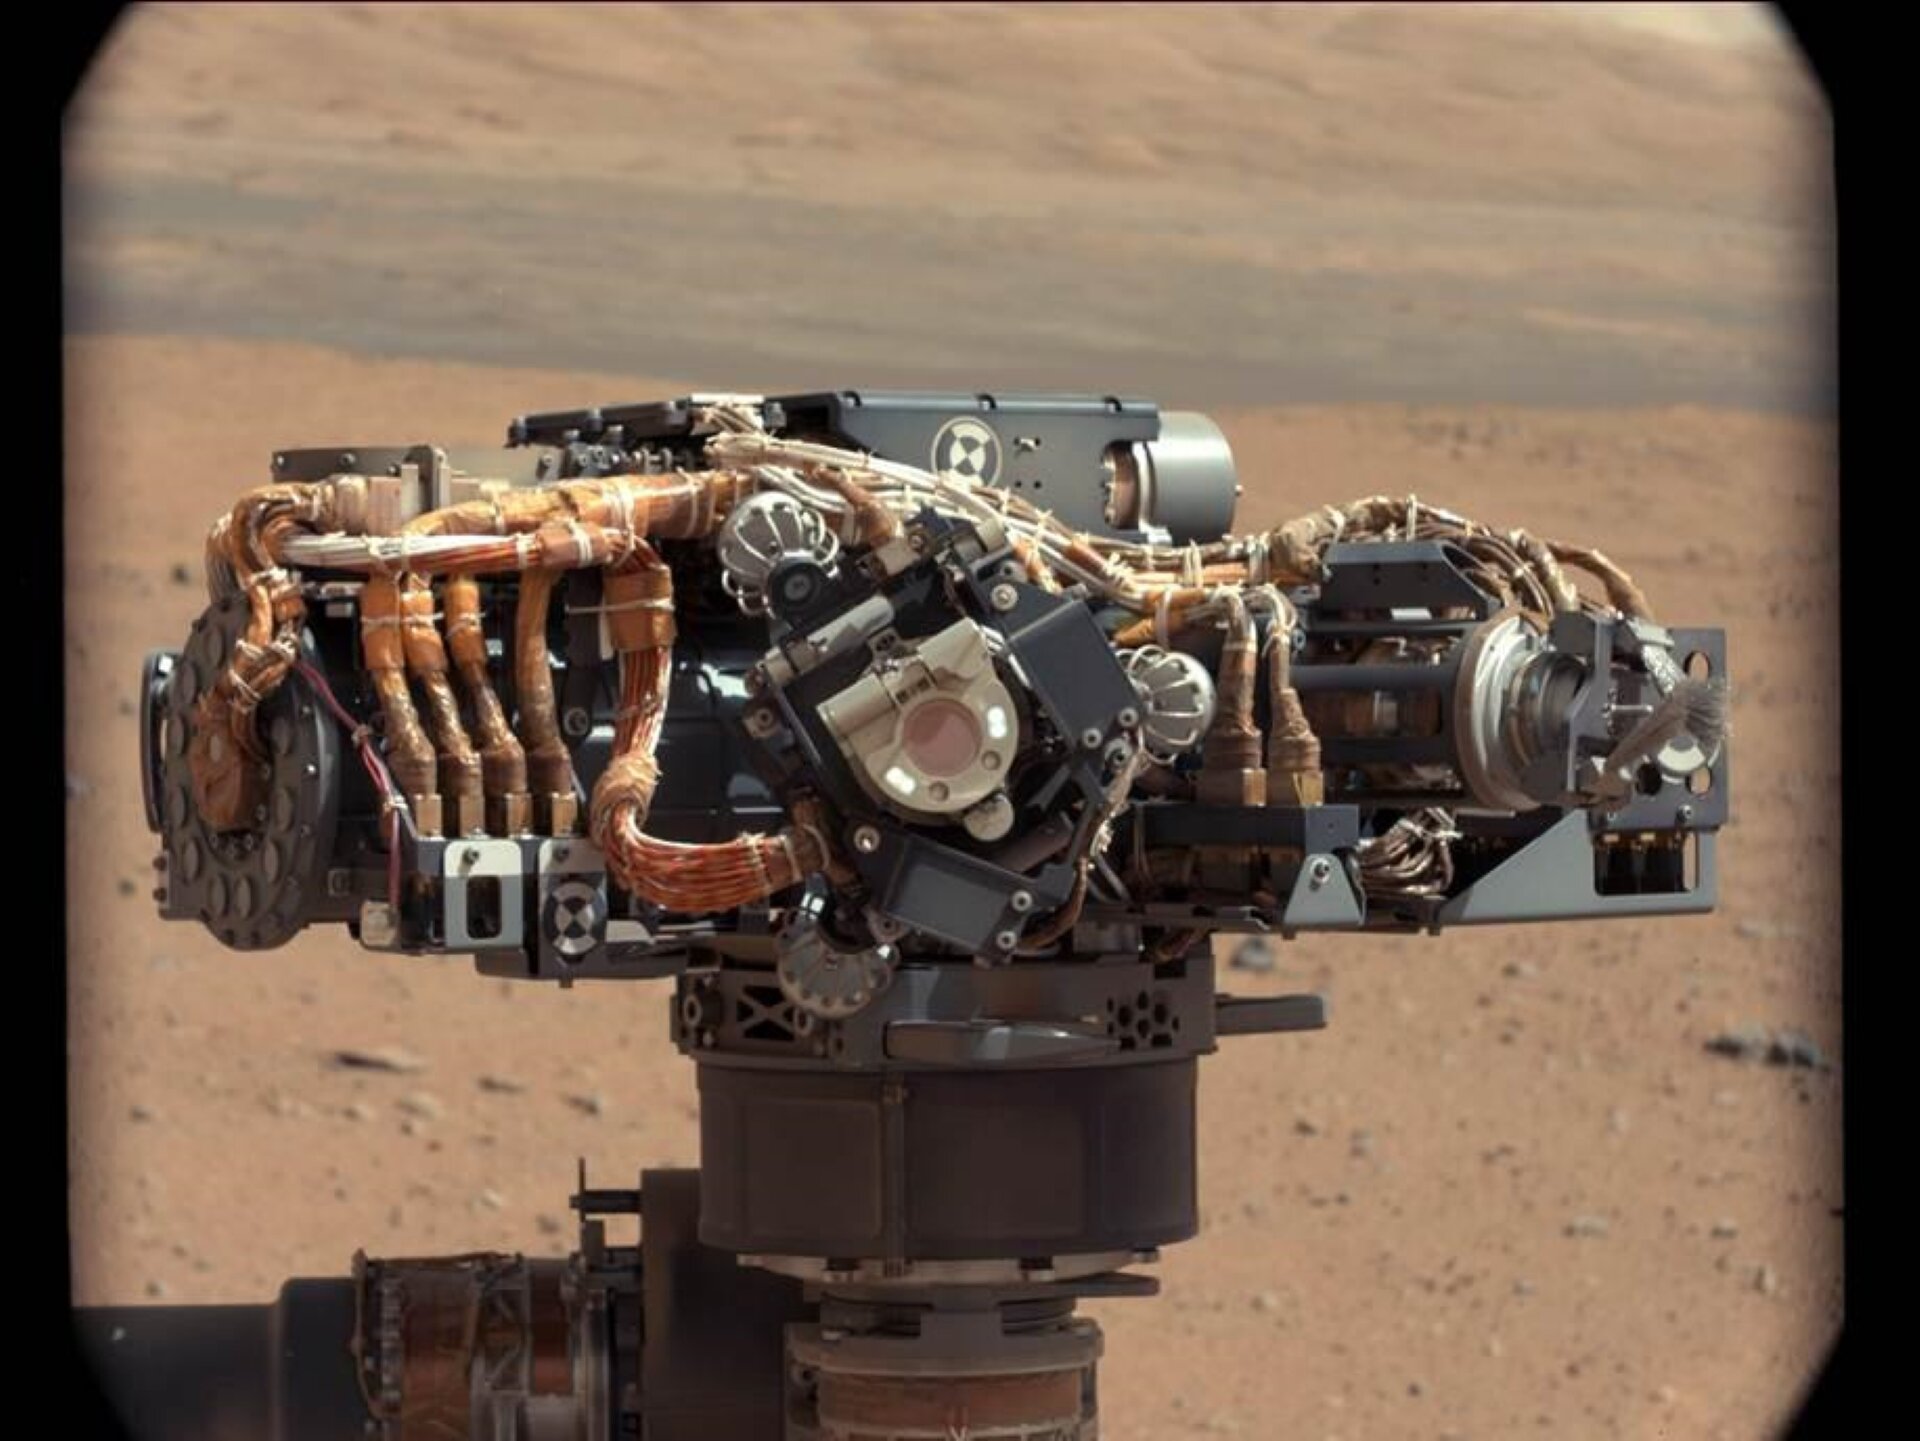 Rys. 6. górny. Ilustracja przedstawia zdjęcie łazika Curiosity badającego powierzchnię Marsa od dwa tysiące dwunastego roku. Na zdjęciu pokazano niewielki pojazd kołowy przemierzający piaszczystą powierzchnię Marsa. Nad podstawą pojazdu widoczna jest pionowa kolumna, na zwieńczeniu której znajdują się liczne urządzenia pomiarowe. Systemy pomiarowe widoczne są w postaci wiązek przewodów, chwytaków, kamer i licznych innych urządzeń. 